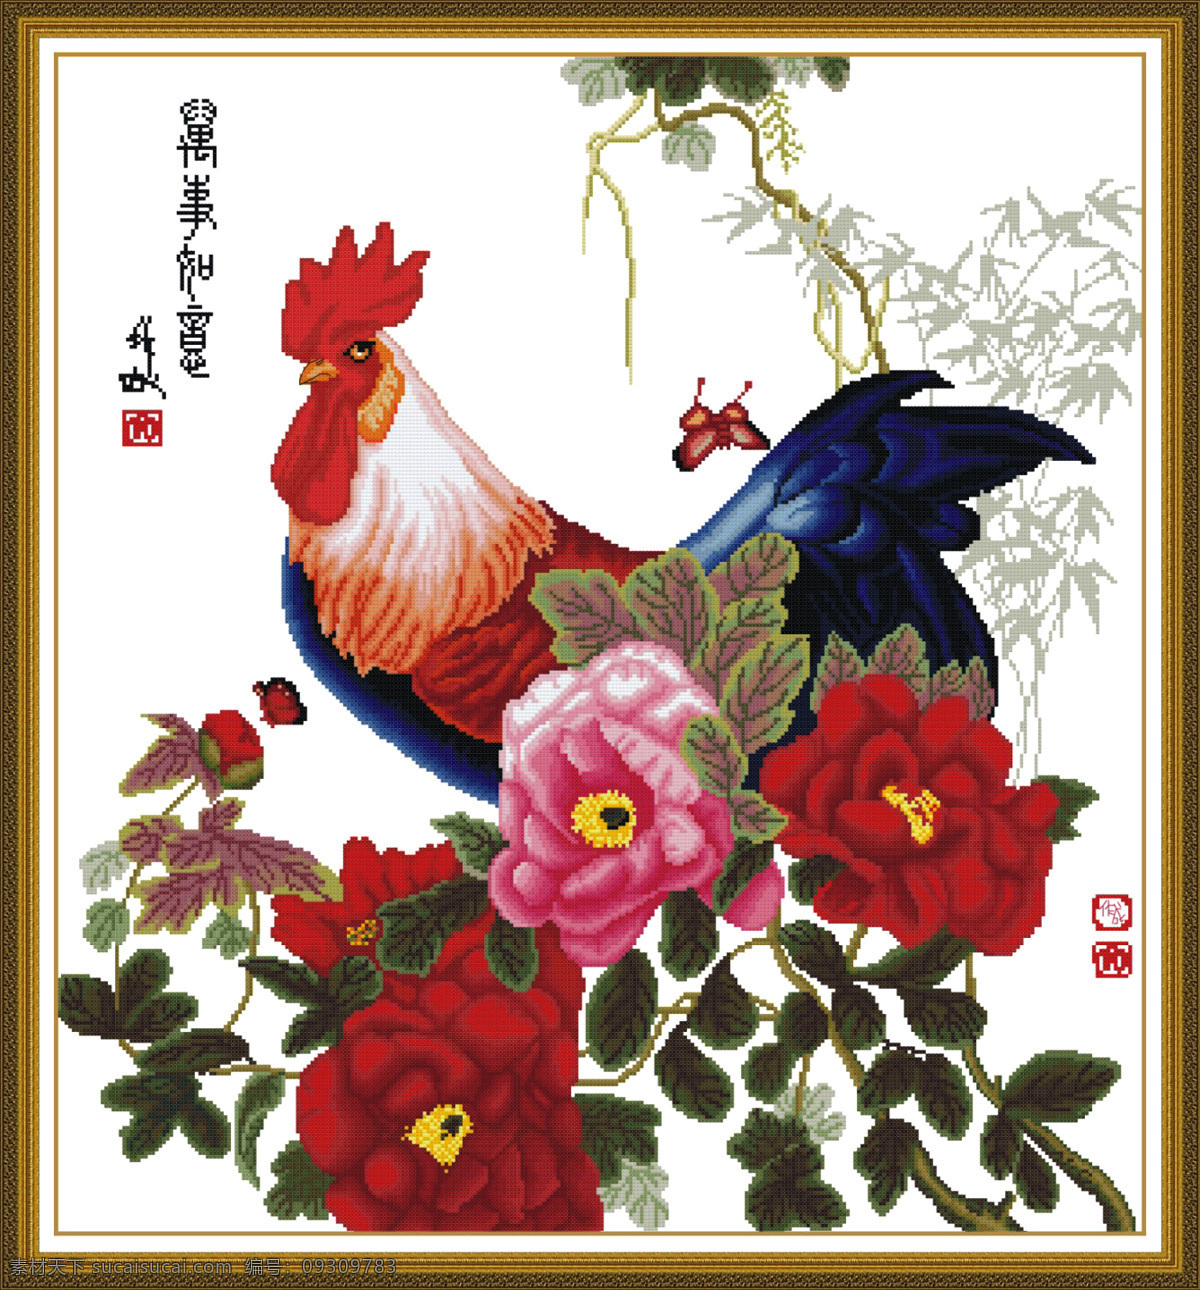 大富大贵 刺绣 双面绣 图案 古典 传统纹样 工艺品 鸡 牡丹 传统文化 文化艺术